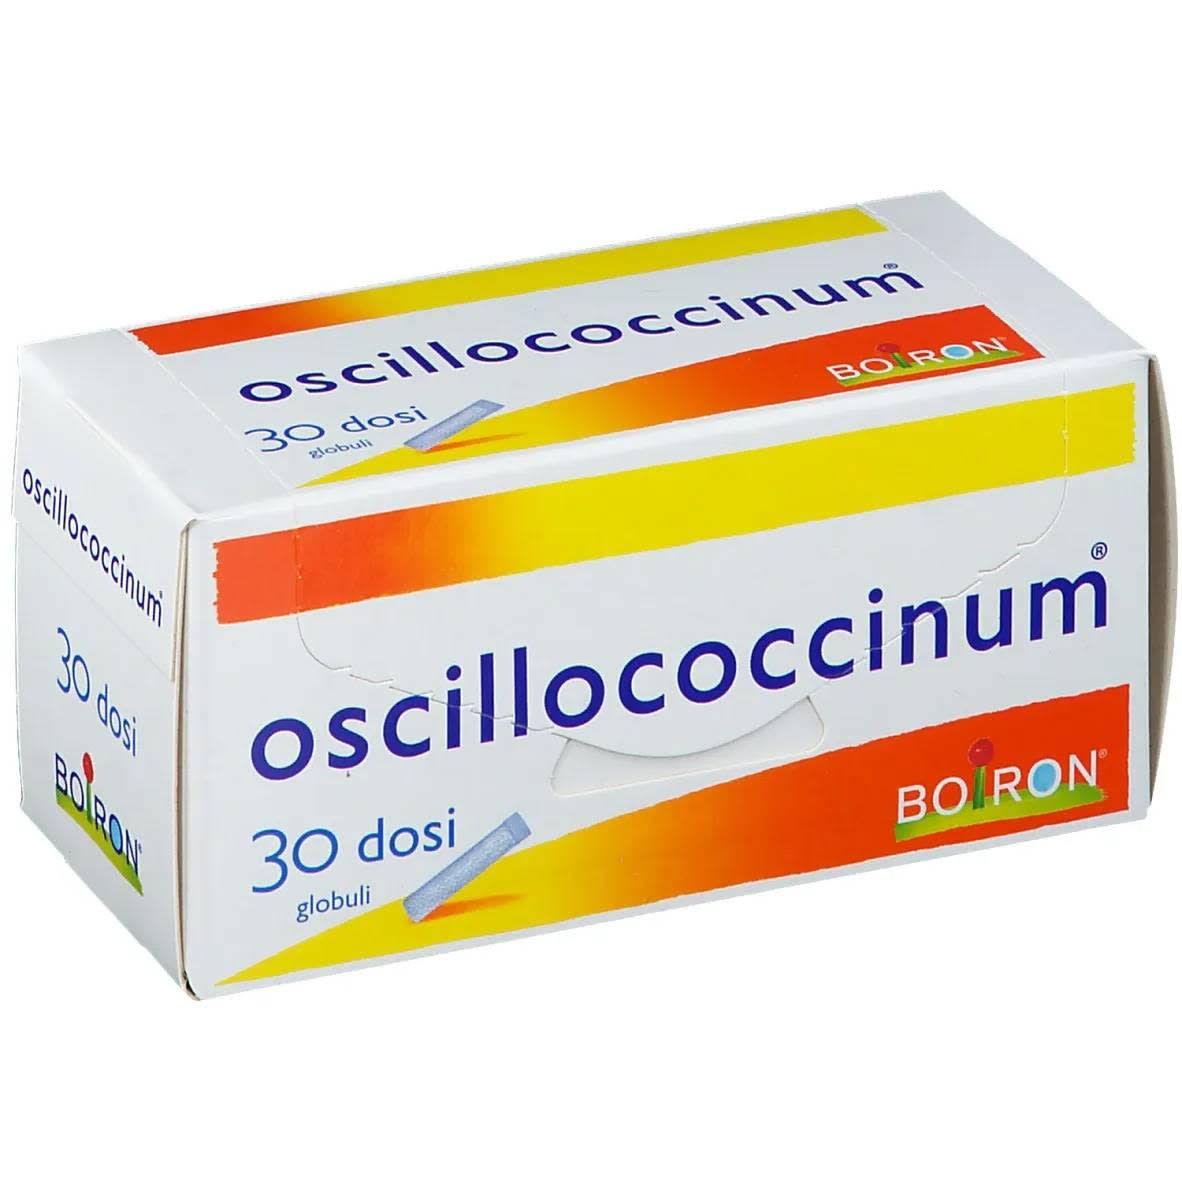 801458985 - Boiron Oscillococcinum 200K Medicinale omeopatico 30 Dosi - 7820811_3.jpg